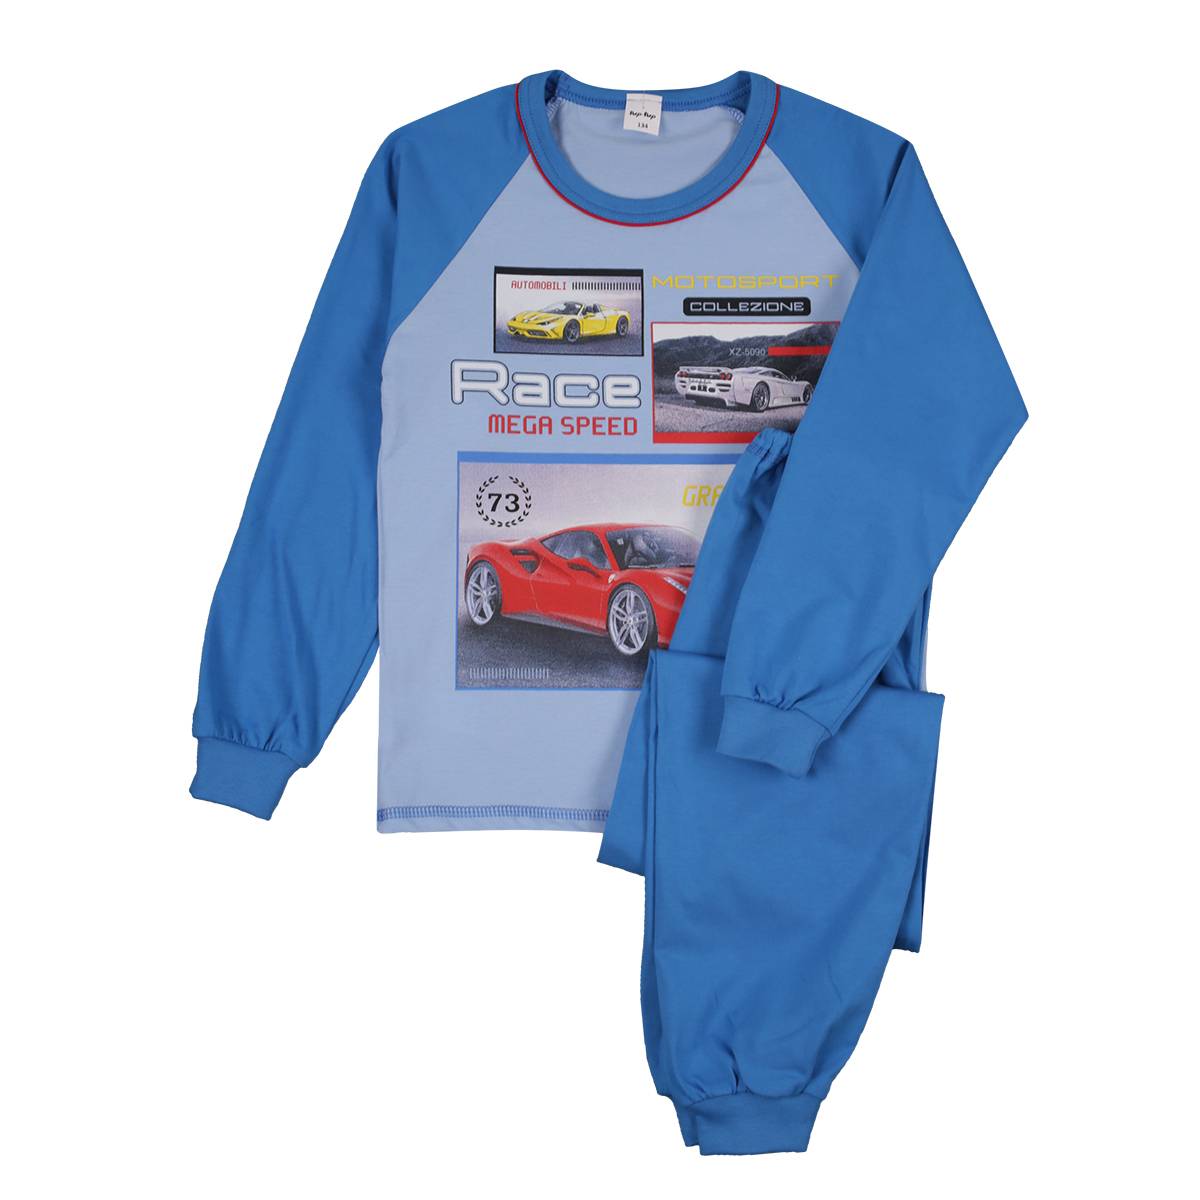 Chłopięca niebieska piżama samochód wyścigowy Tup Tup